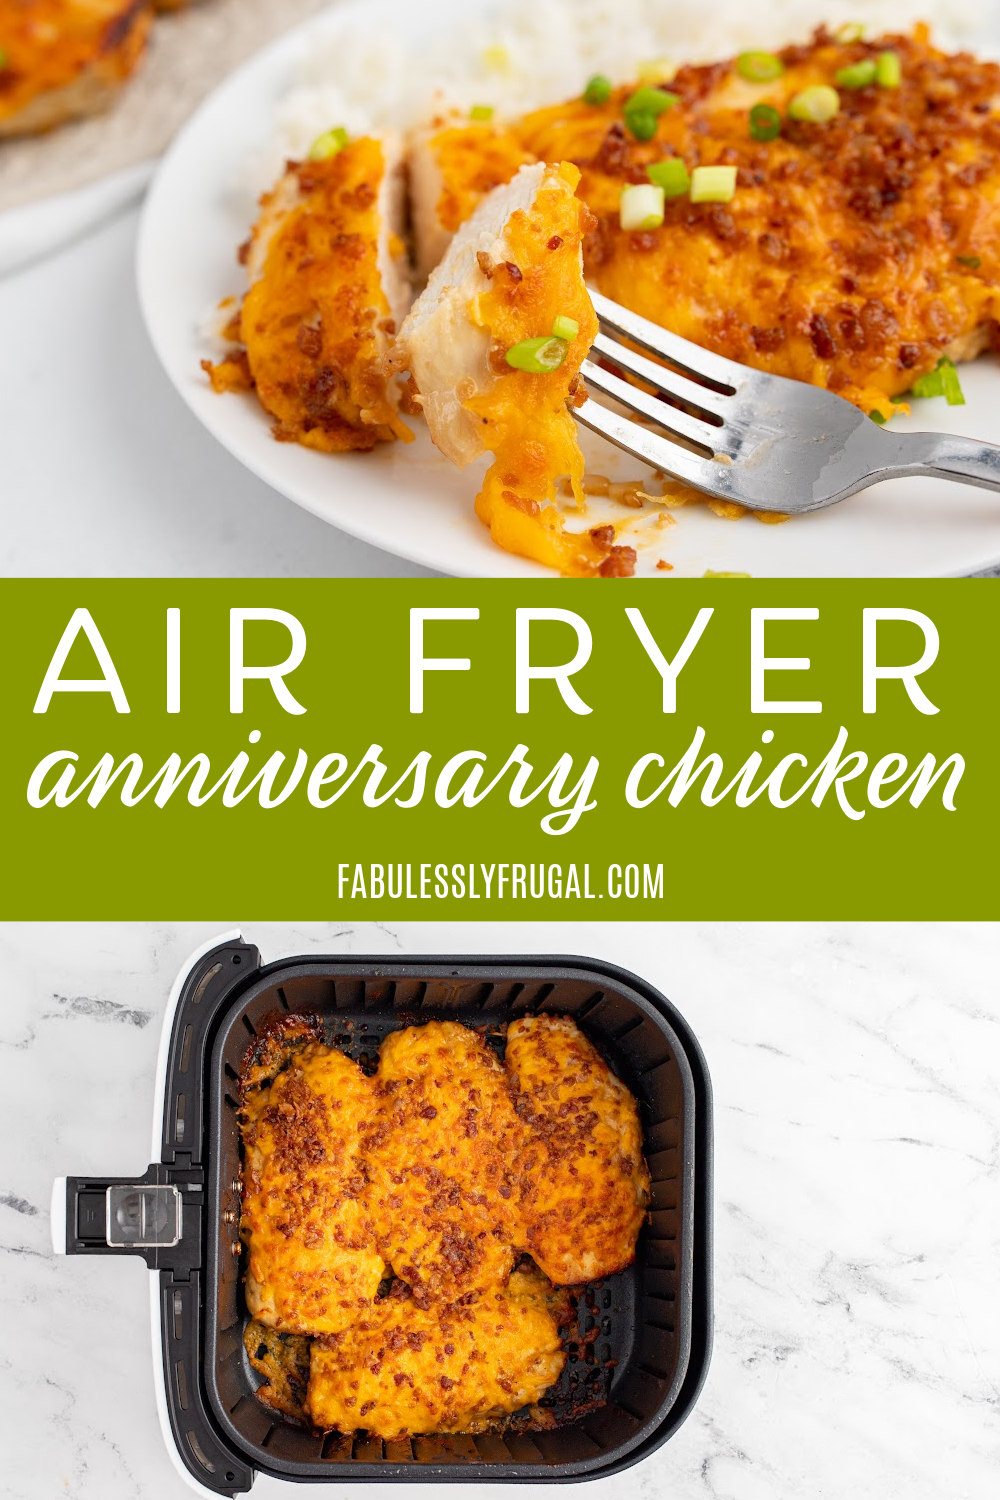 air fryer anniversary chicken